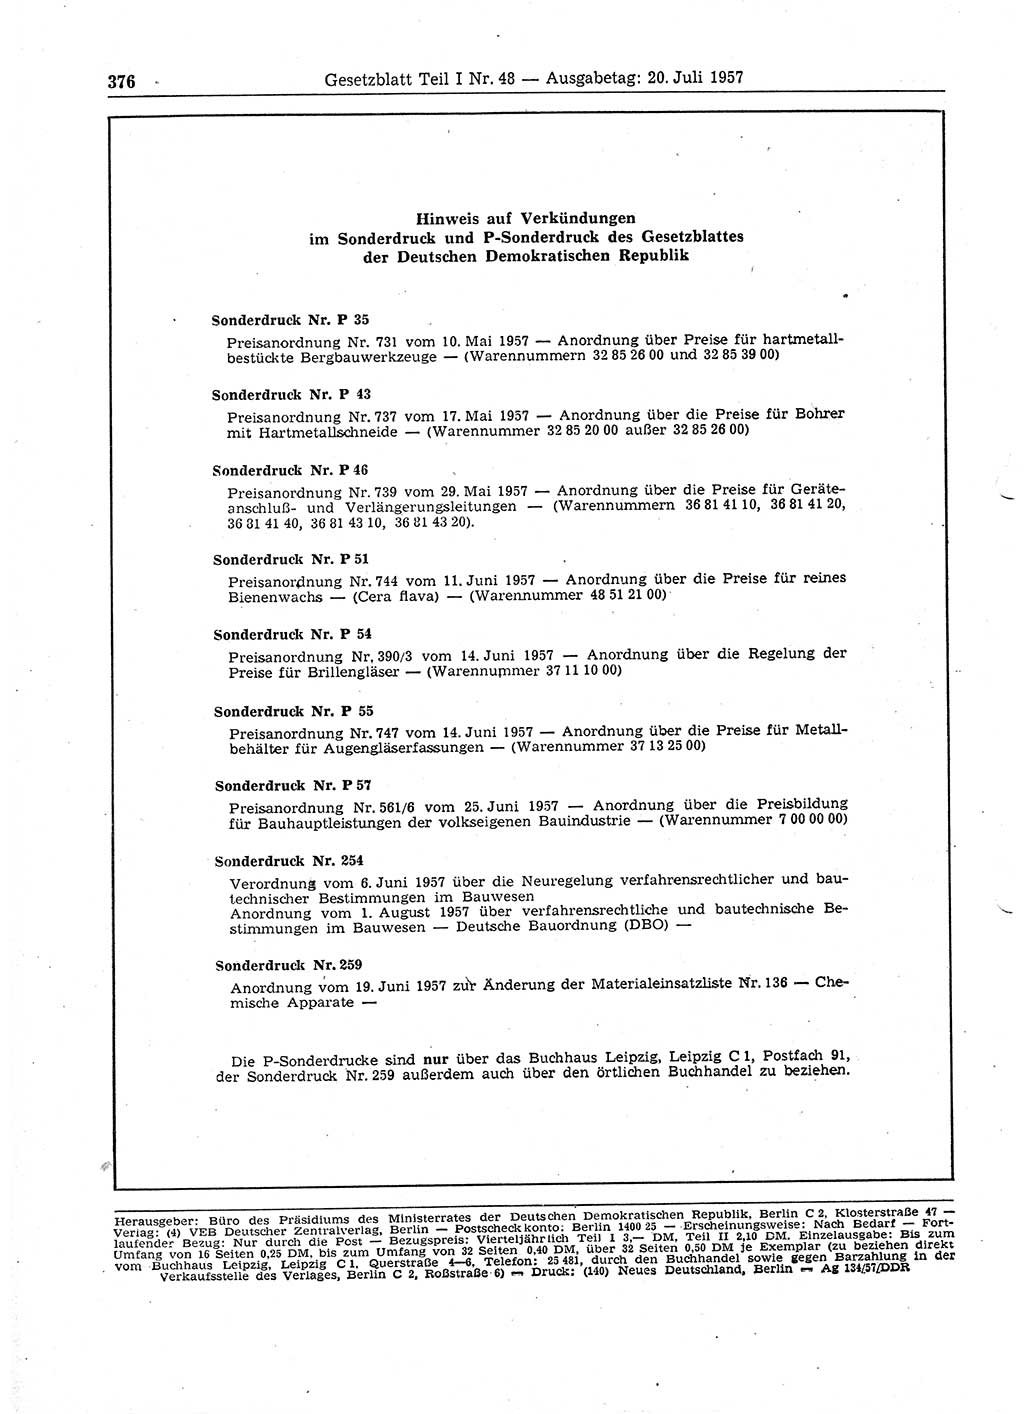 Gesetzblatt (GBl.) der Deutschen Demokratischen Republik (DDR) Teil Ⅰ 1957, Seite 376 (GBl. DDR Ⅰ 1957, S. 376)